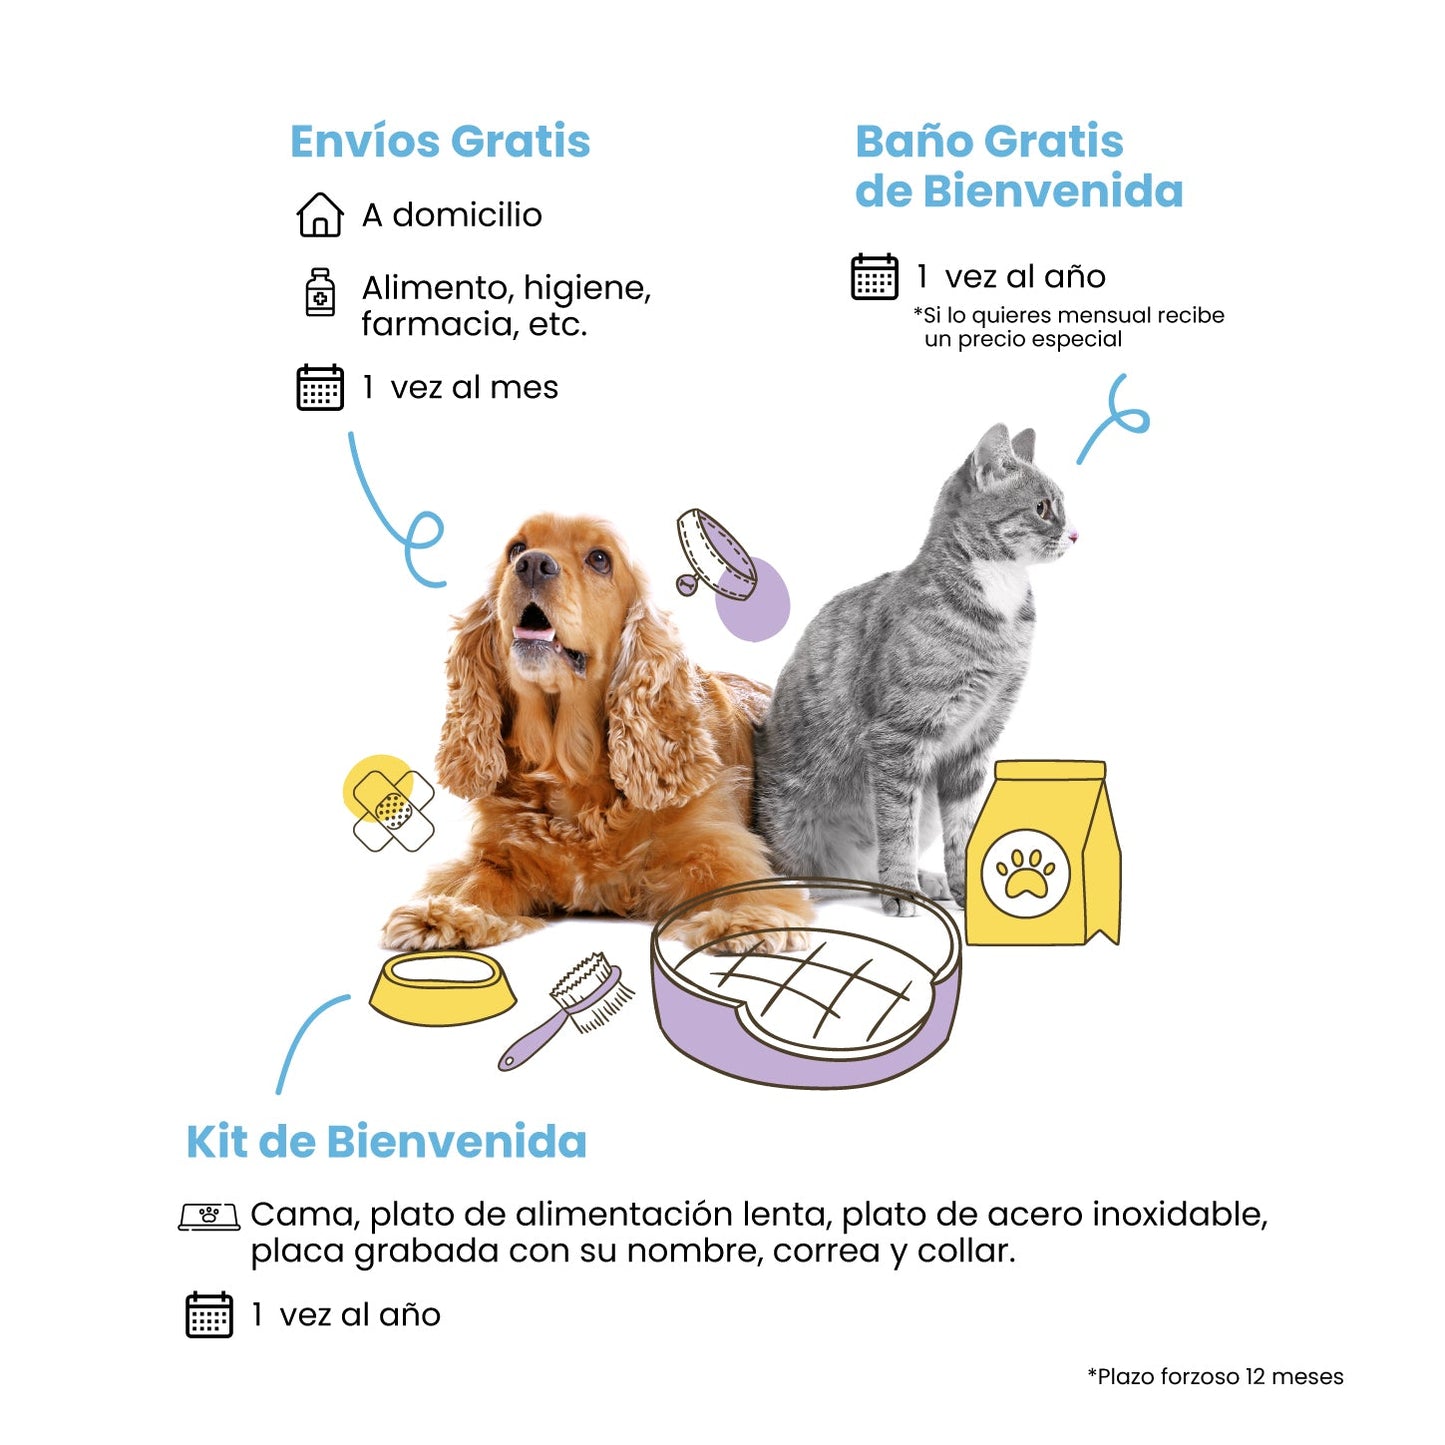 Membresía Petzer | Kit Bienvenida para Perros y Gatos | Petzer